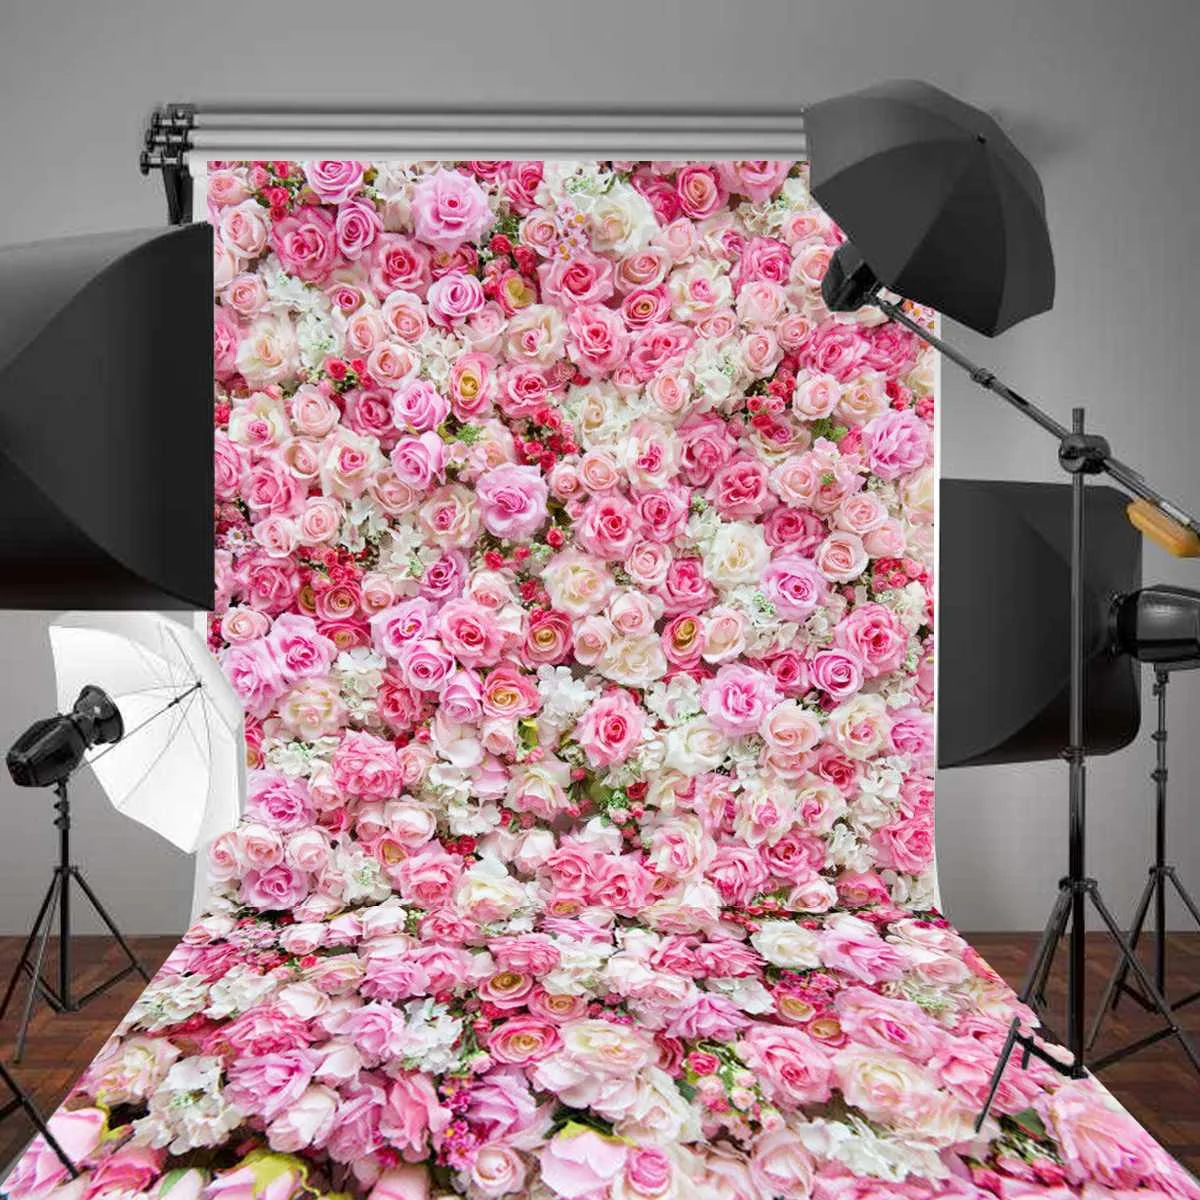 

Романтический розовый фон для фотосъемки фон для фотосессии для Камера реквизит для фотостудии фон для Одежда для свадьбы, дня рождения фот...